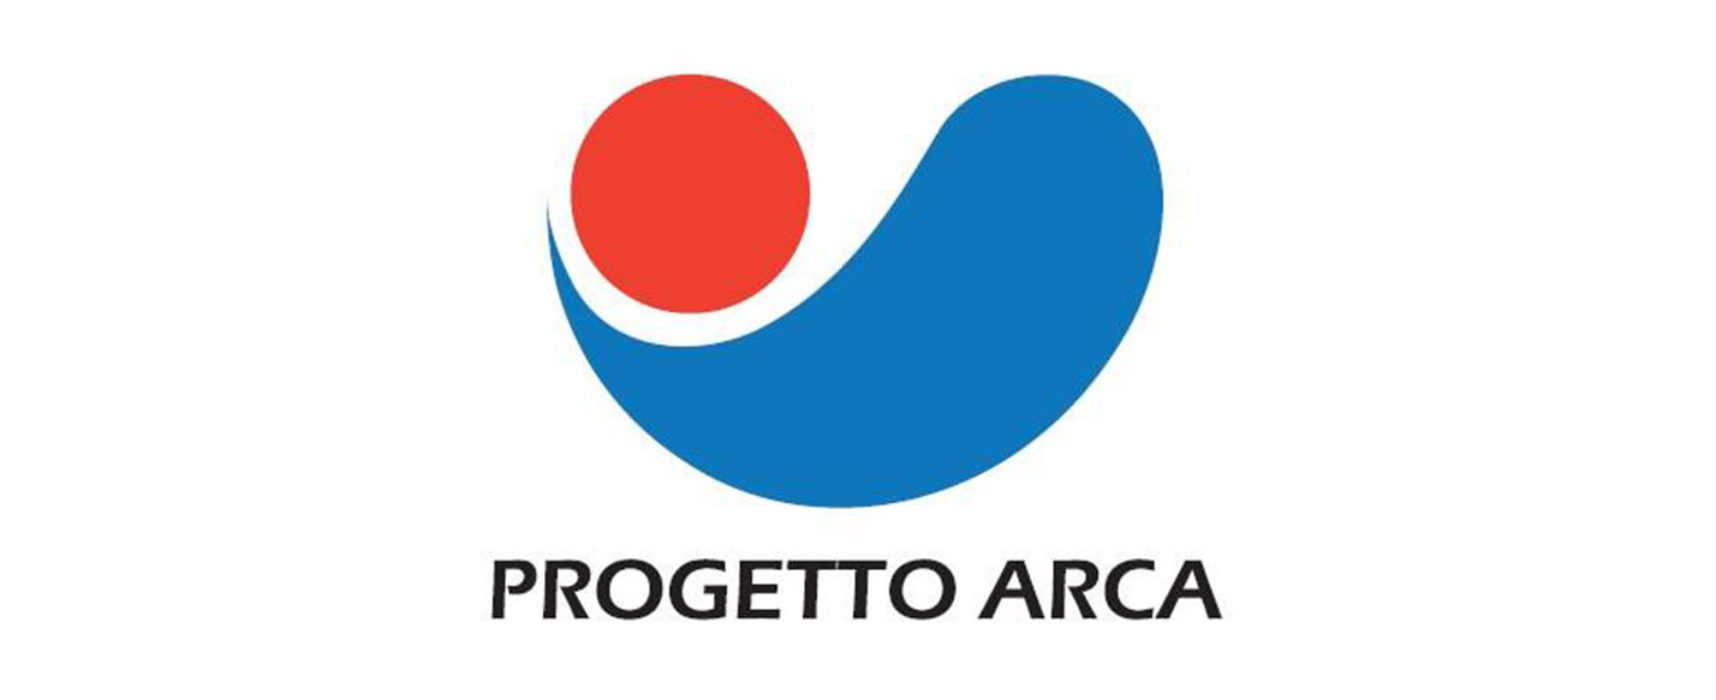 Progetto Arca crea protocollo d’intesa per promuovere la Puglia in Romania